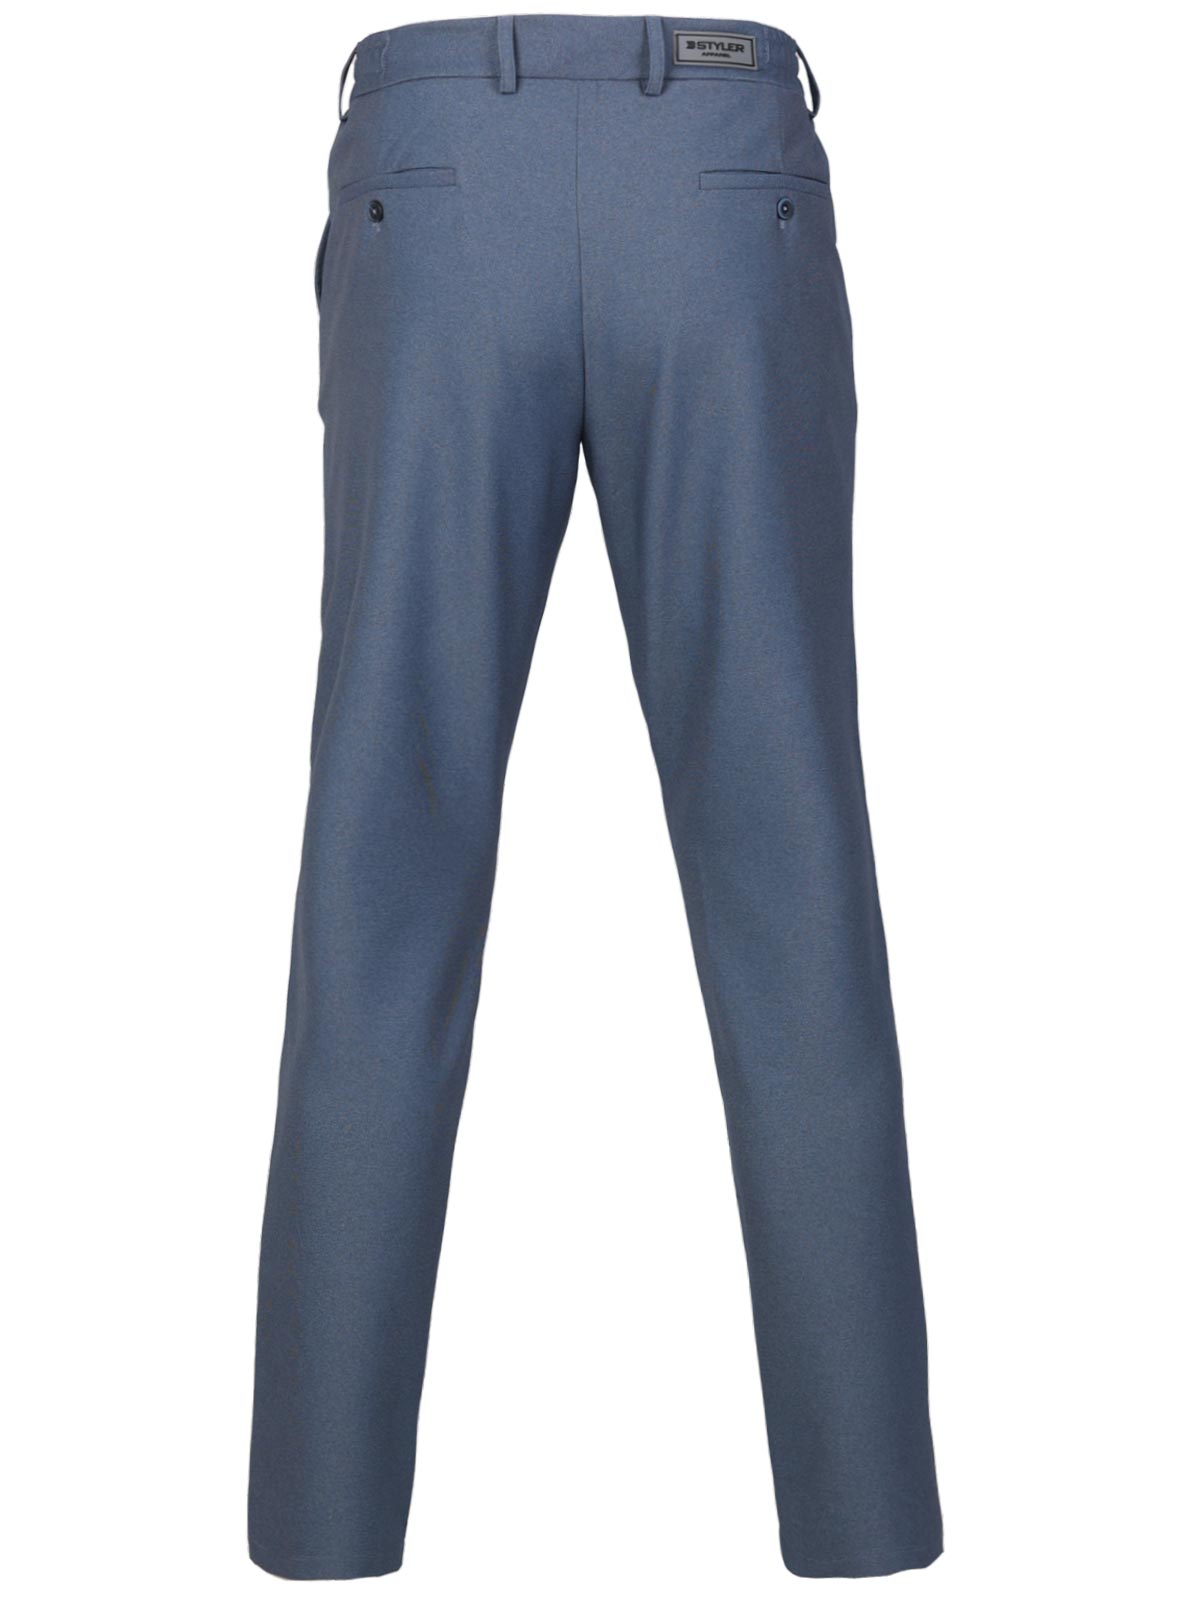 Pantaloni albastru mijlociu cu sireturi - 29012 € 55.12 img2